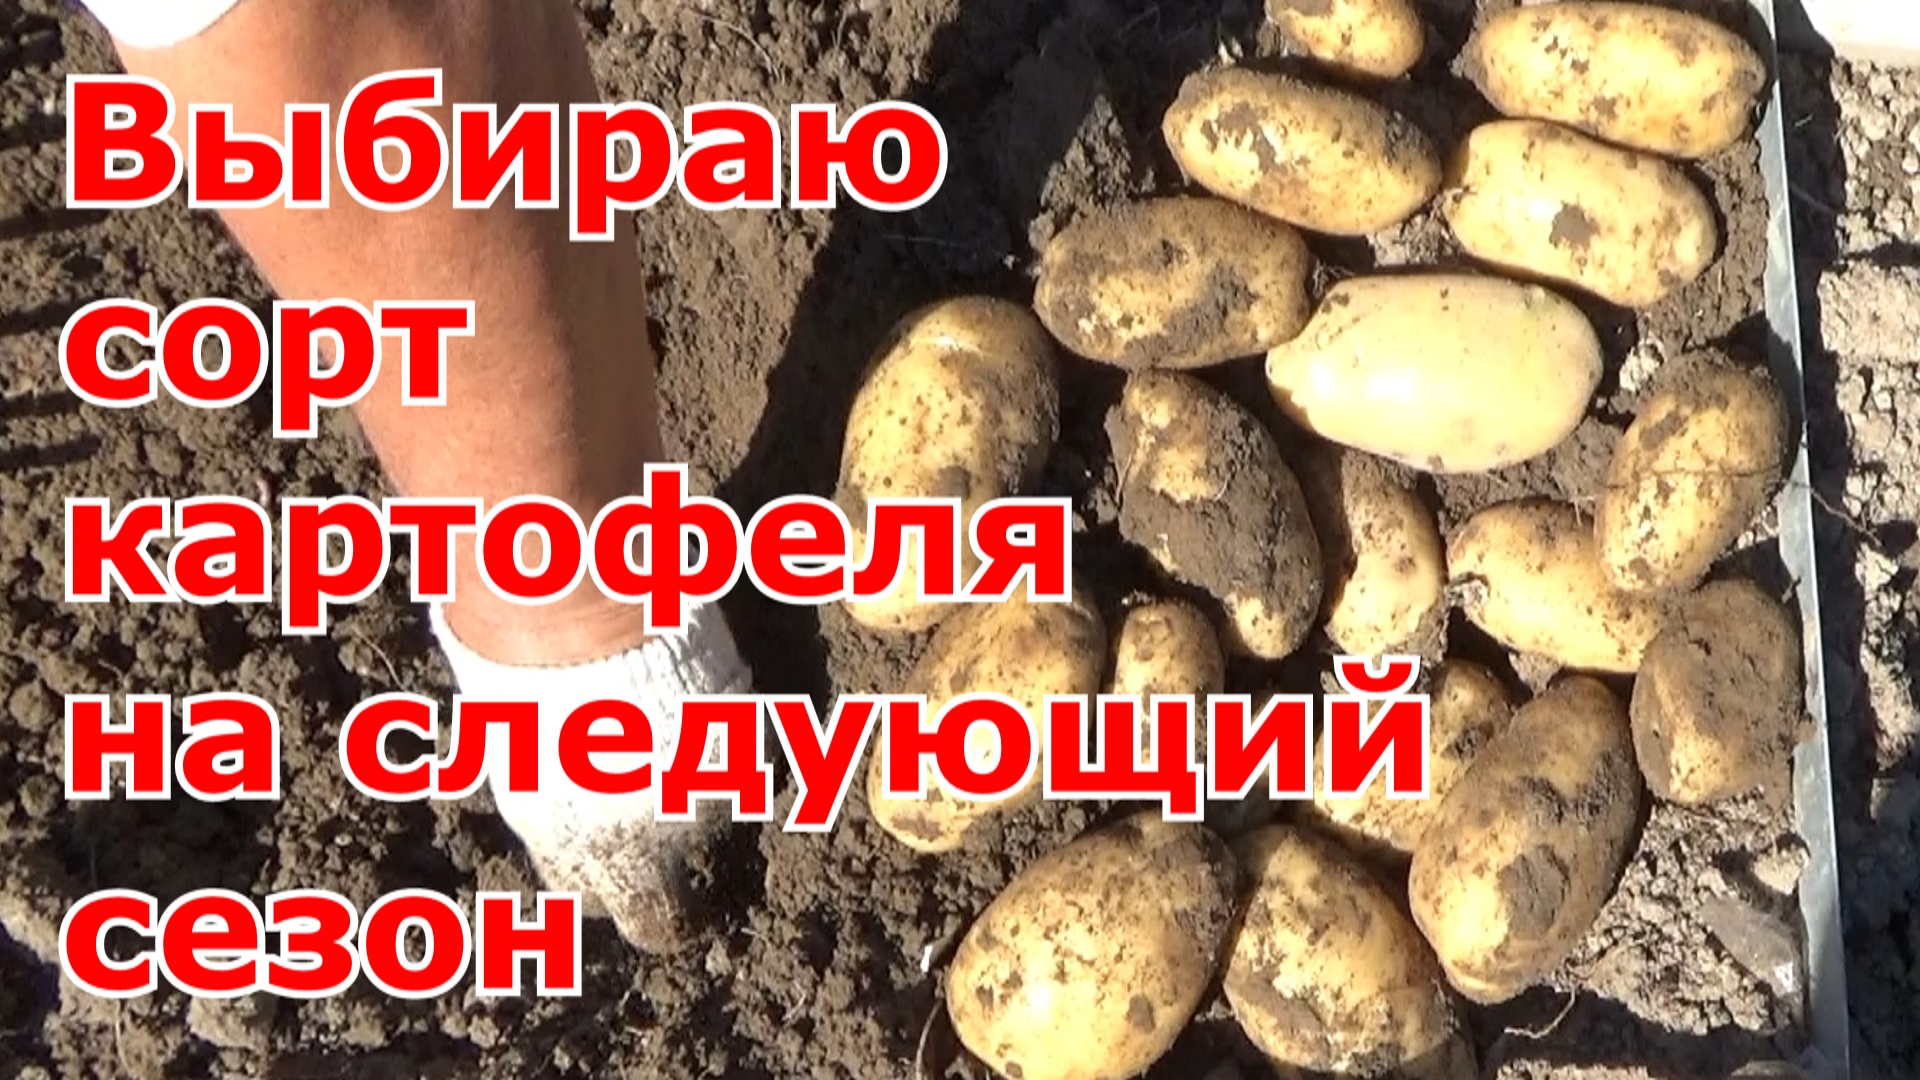 Обзор сортов картофеля прошлого сезона, какой сорт картофеля выберу на следующий год